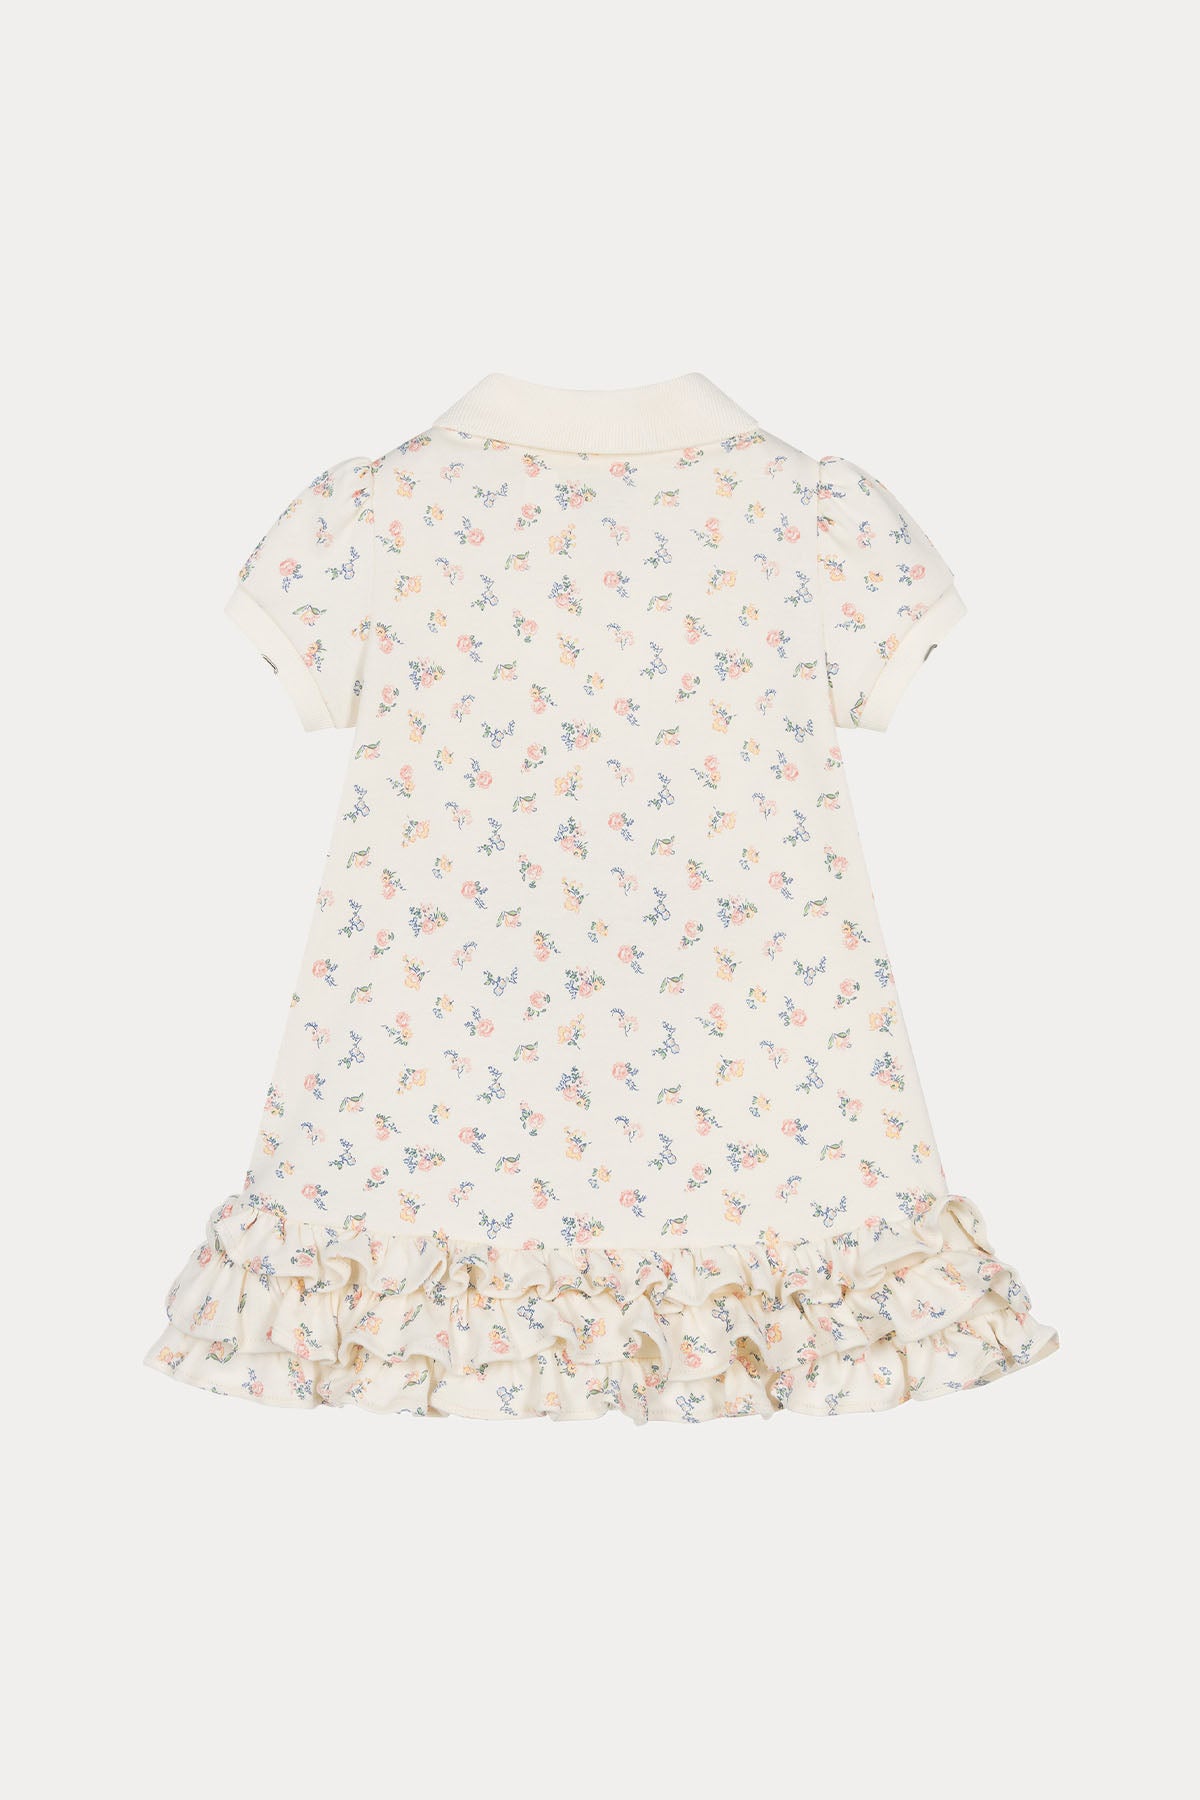 Polo Ralph Lauren Kids 12-18 Aylık Kız Bebek Çiçek Desenli Elbise